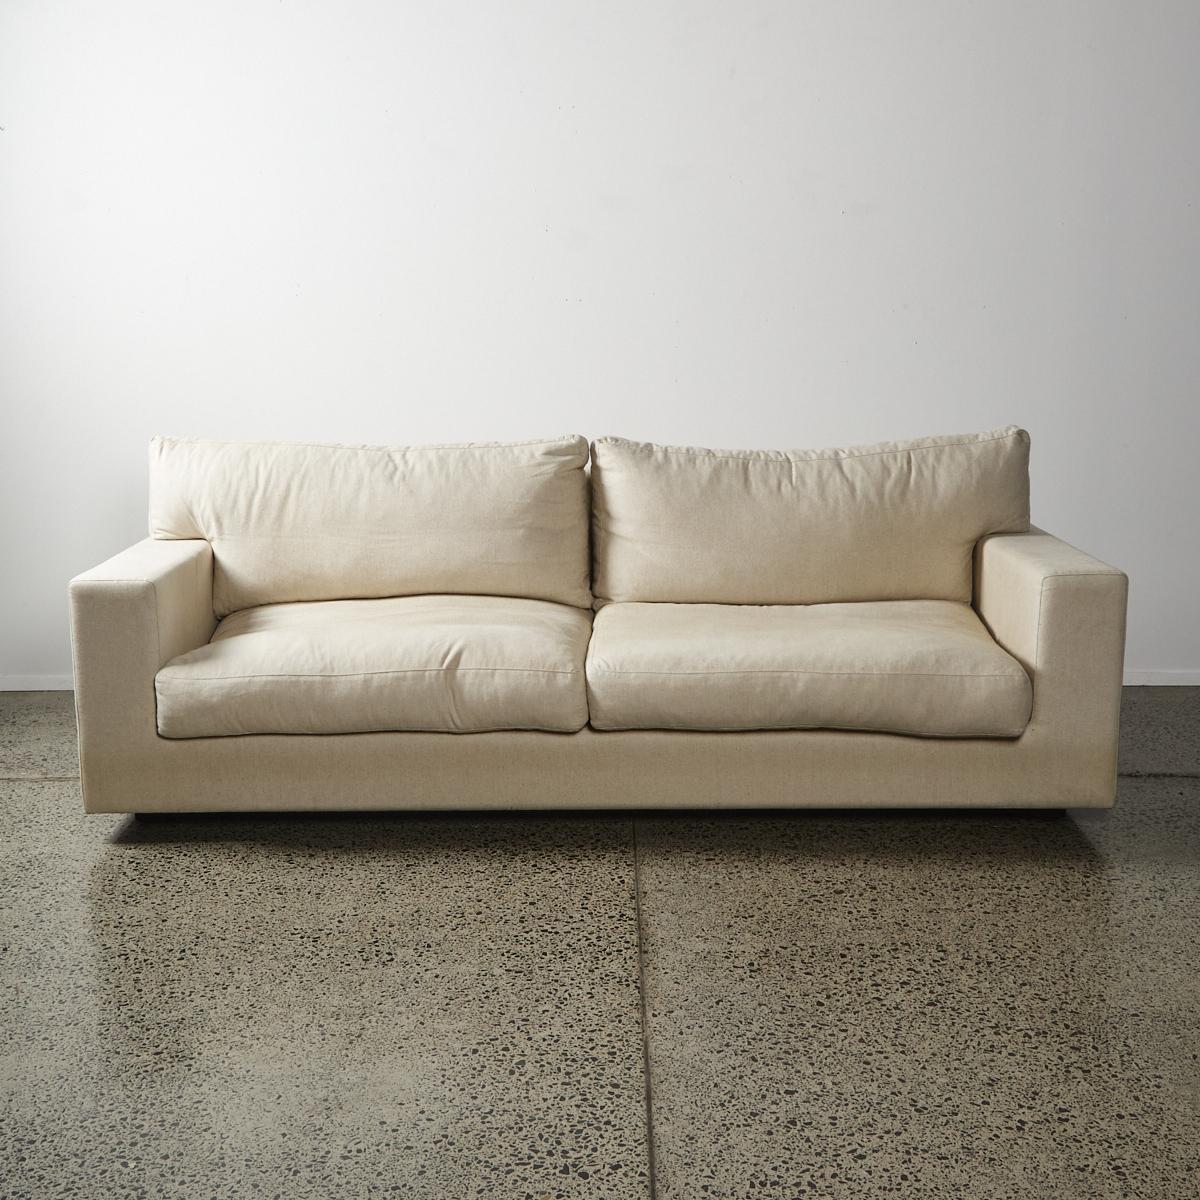 A Contemporary Sofa